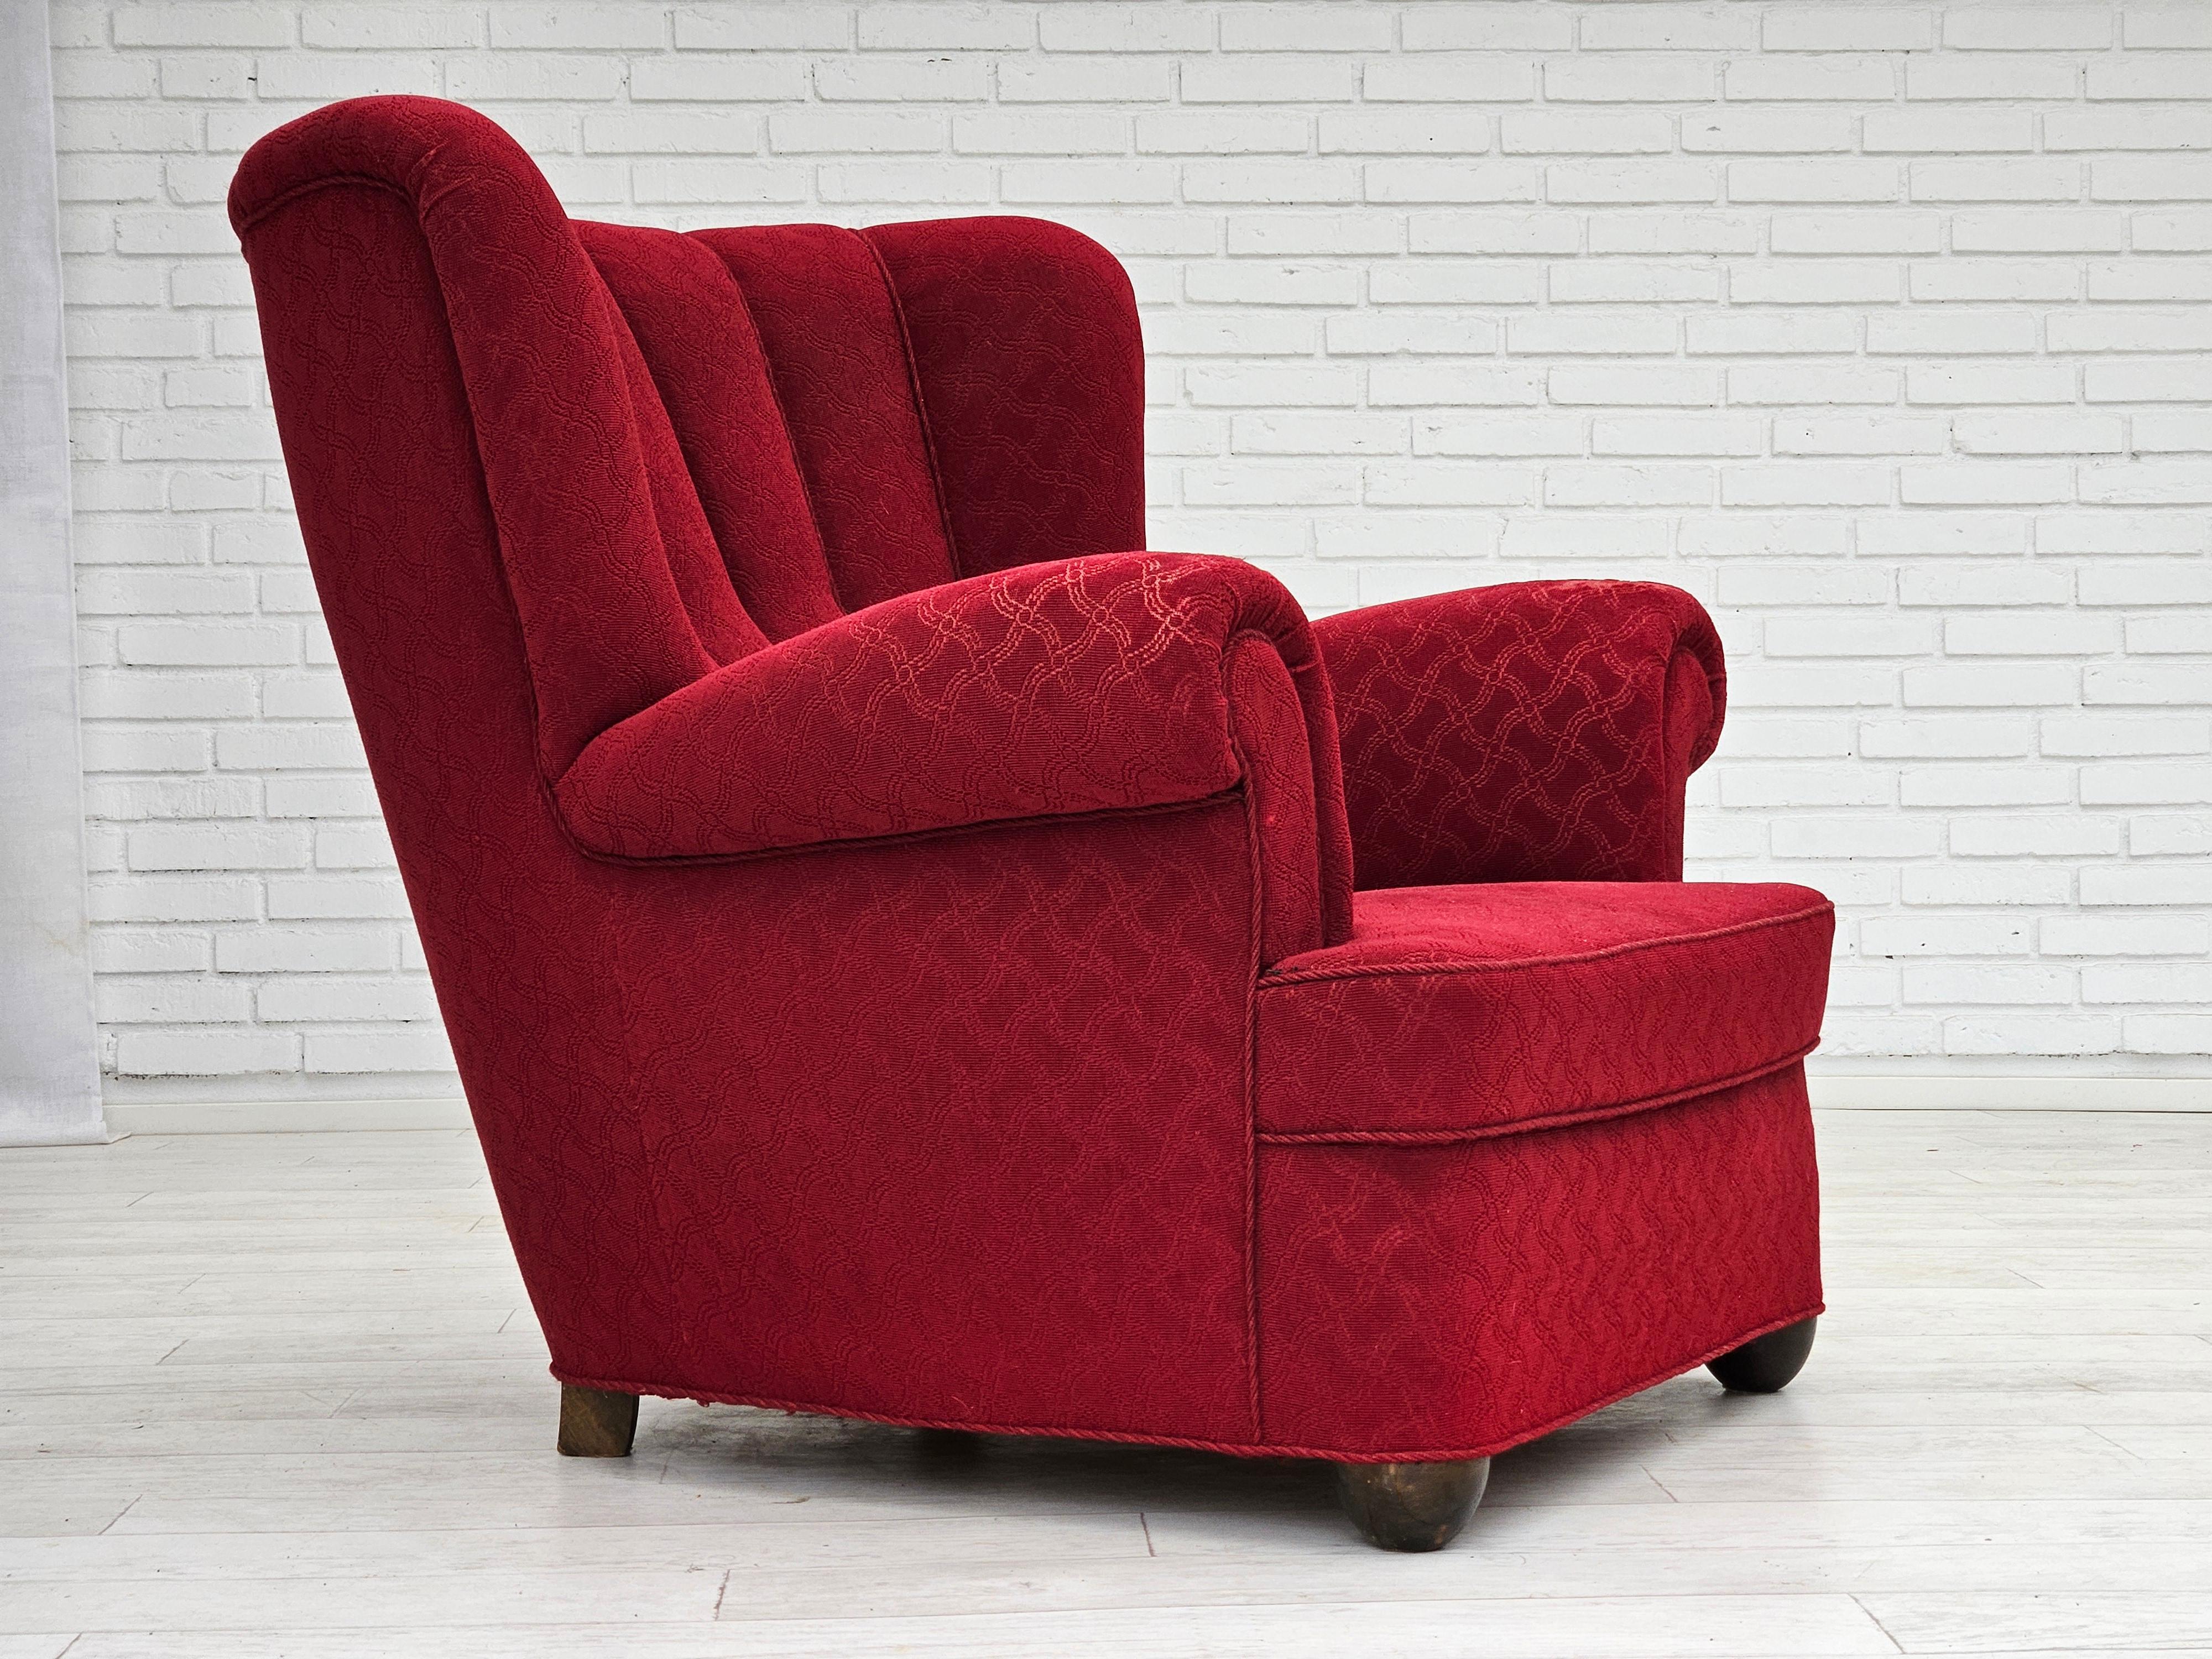 Danois 1960s, fauteuil relax danois, état original, coton/laine rouge, bois de chêne. en vente